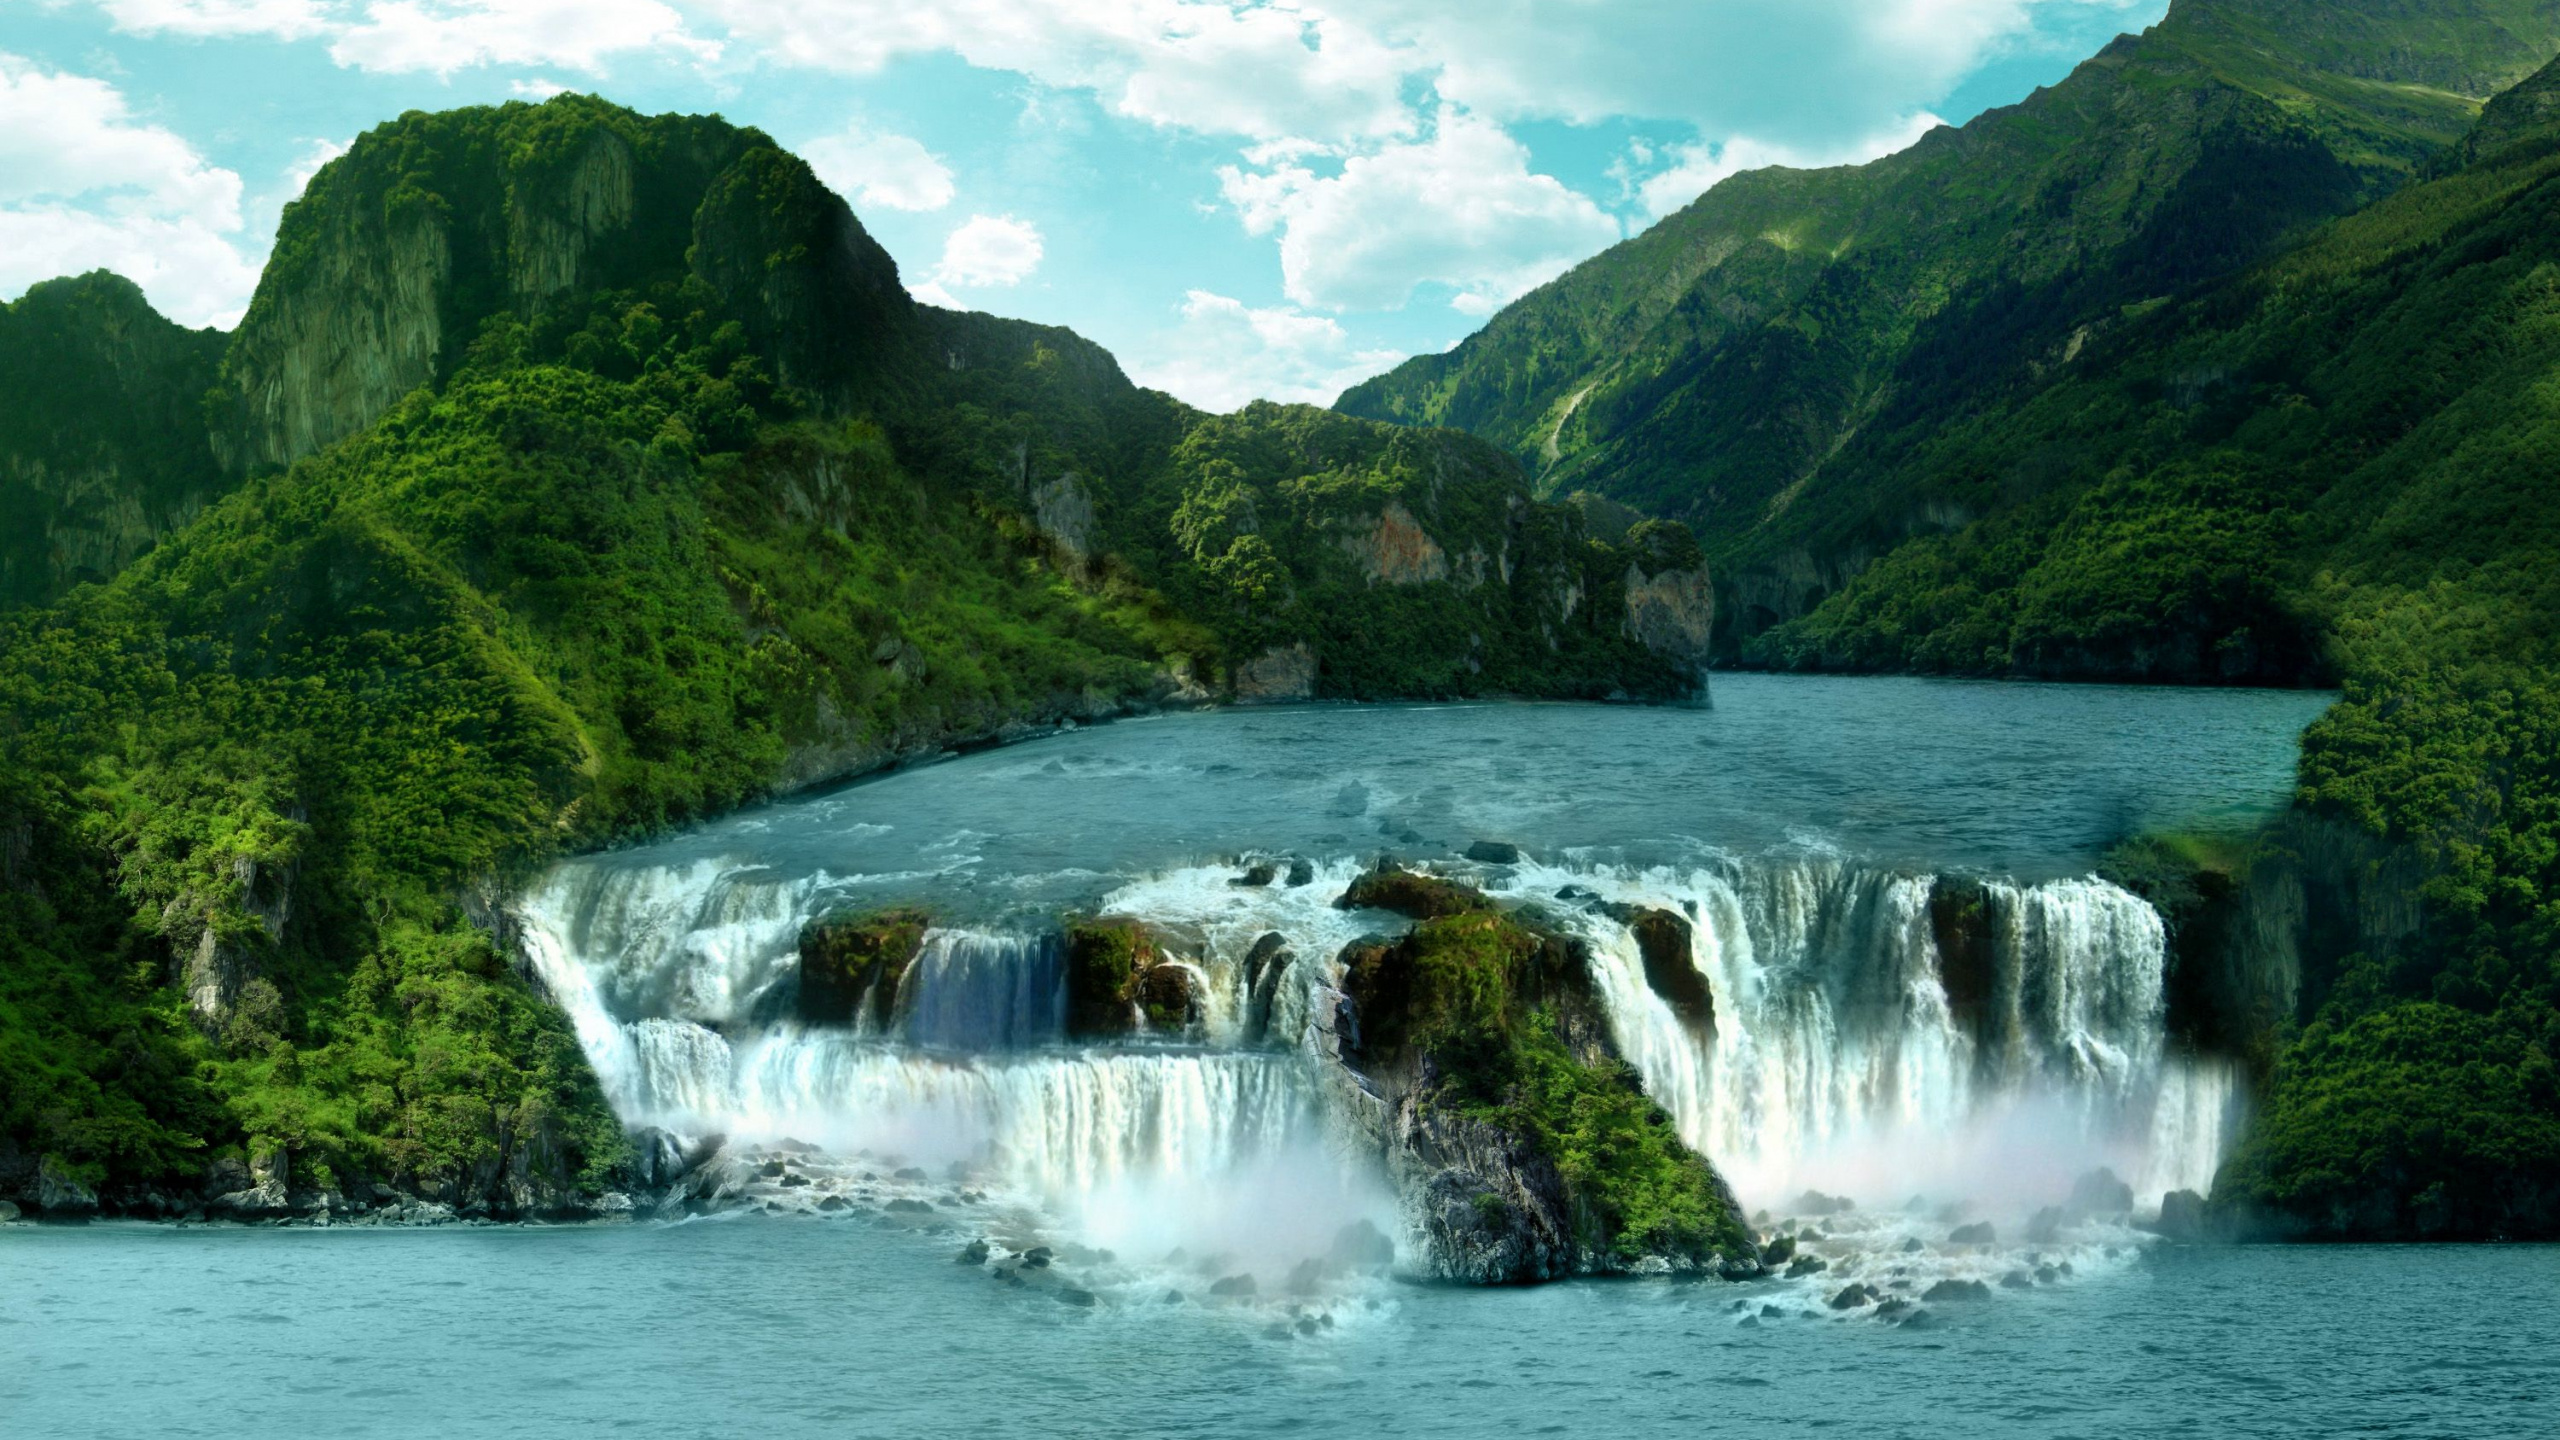 伊瓜苏瀑布, Nohsngithiang 瀑布, 伊瓜苏河, 水资源, 人体内的水 壁纸 2560x1440 允许